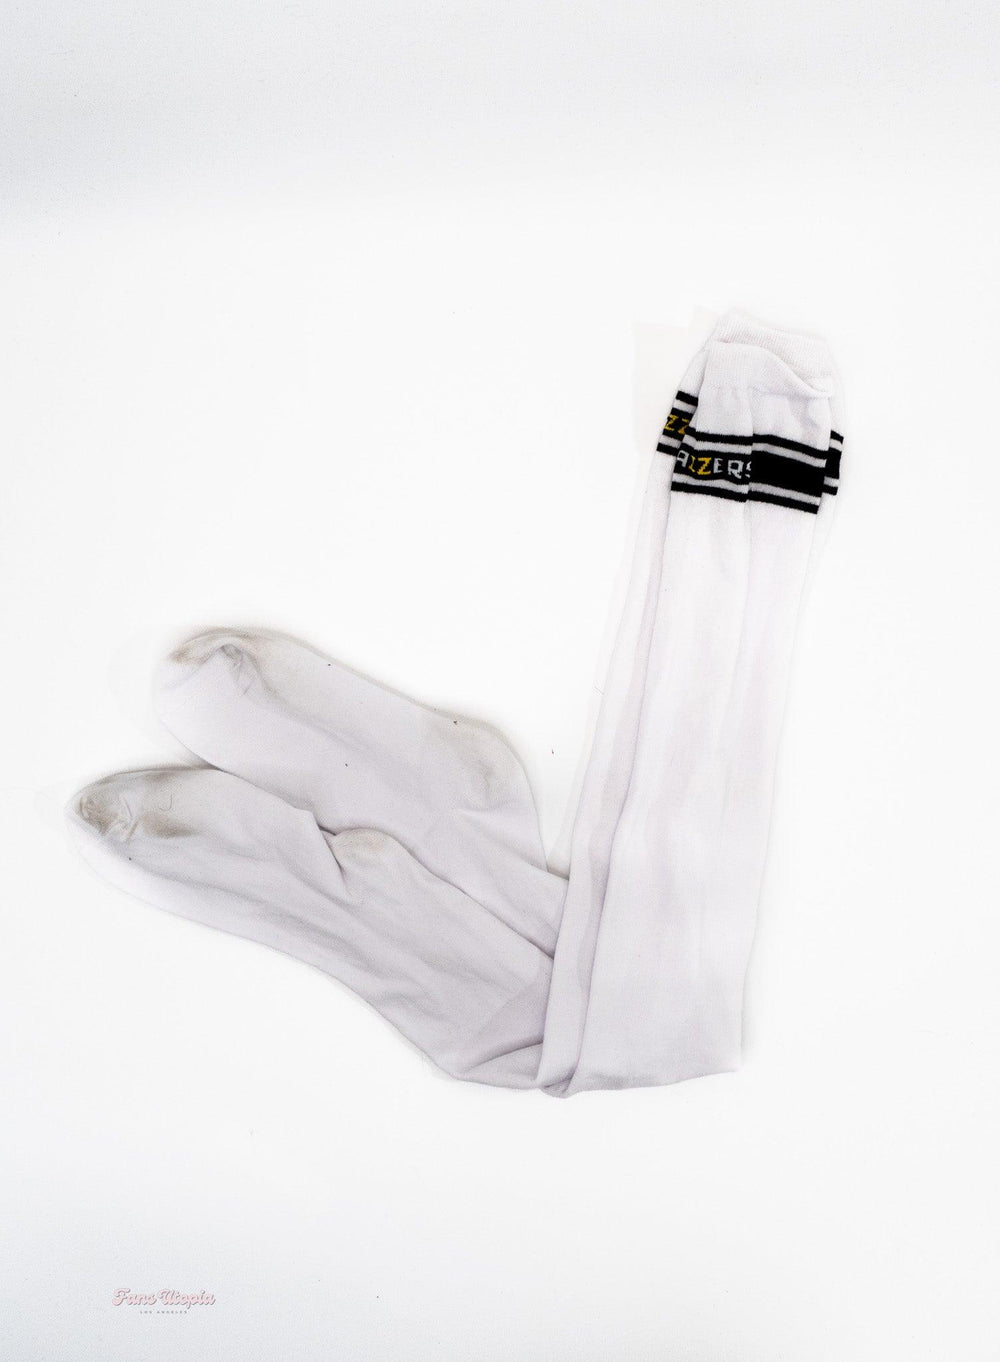 Cherie DeVille White Thigh High Socks + Signed Polaroid - FANS UTOPIA